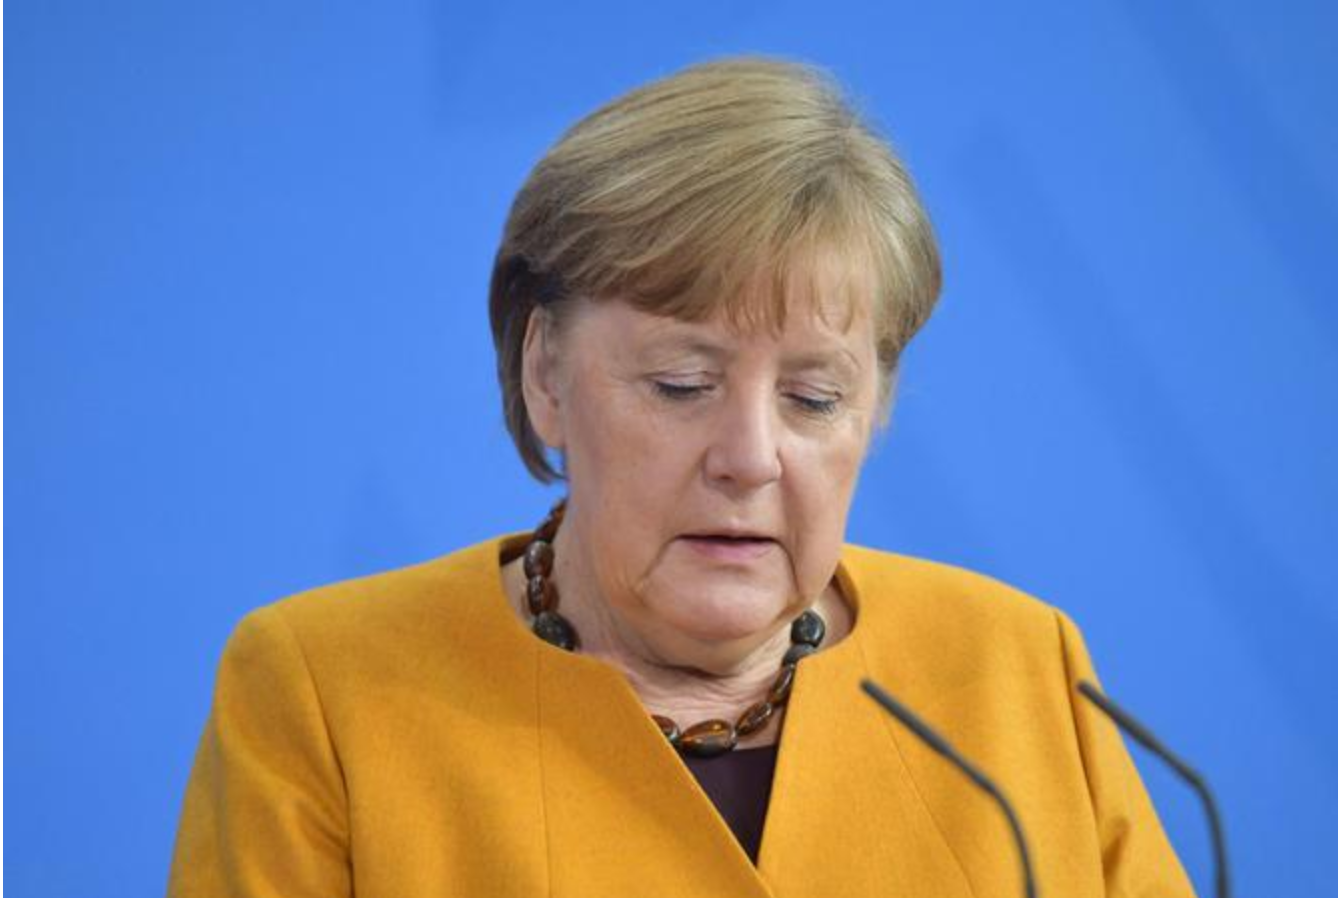 Lockdown Merkel